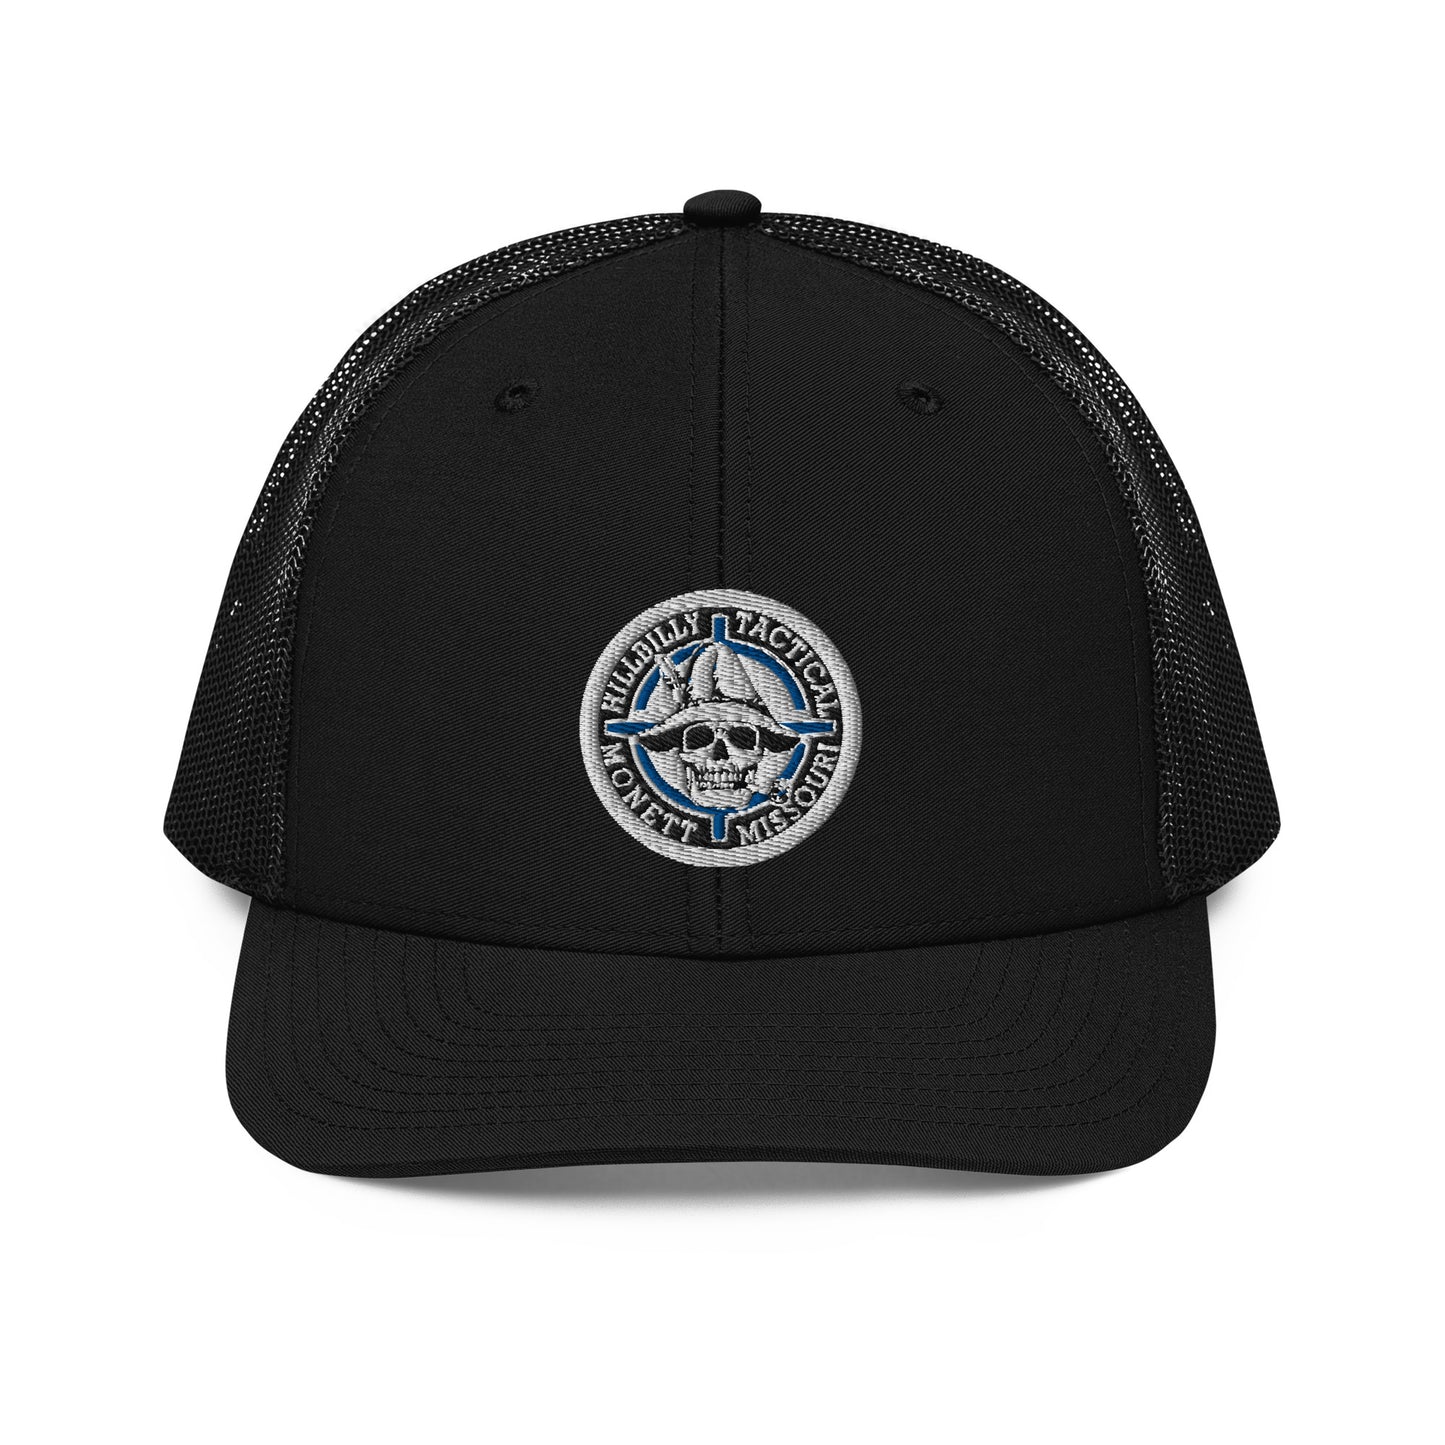 Blue Hillbilly Tactical Logo Trucker Cap